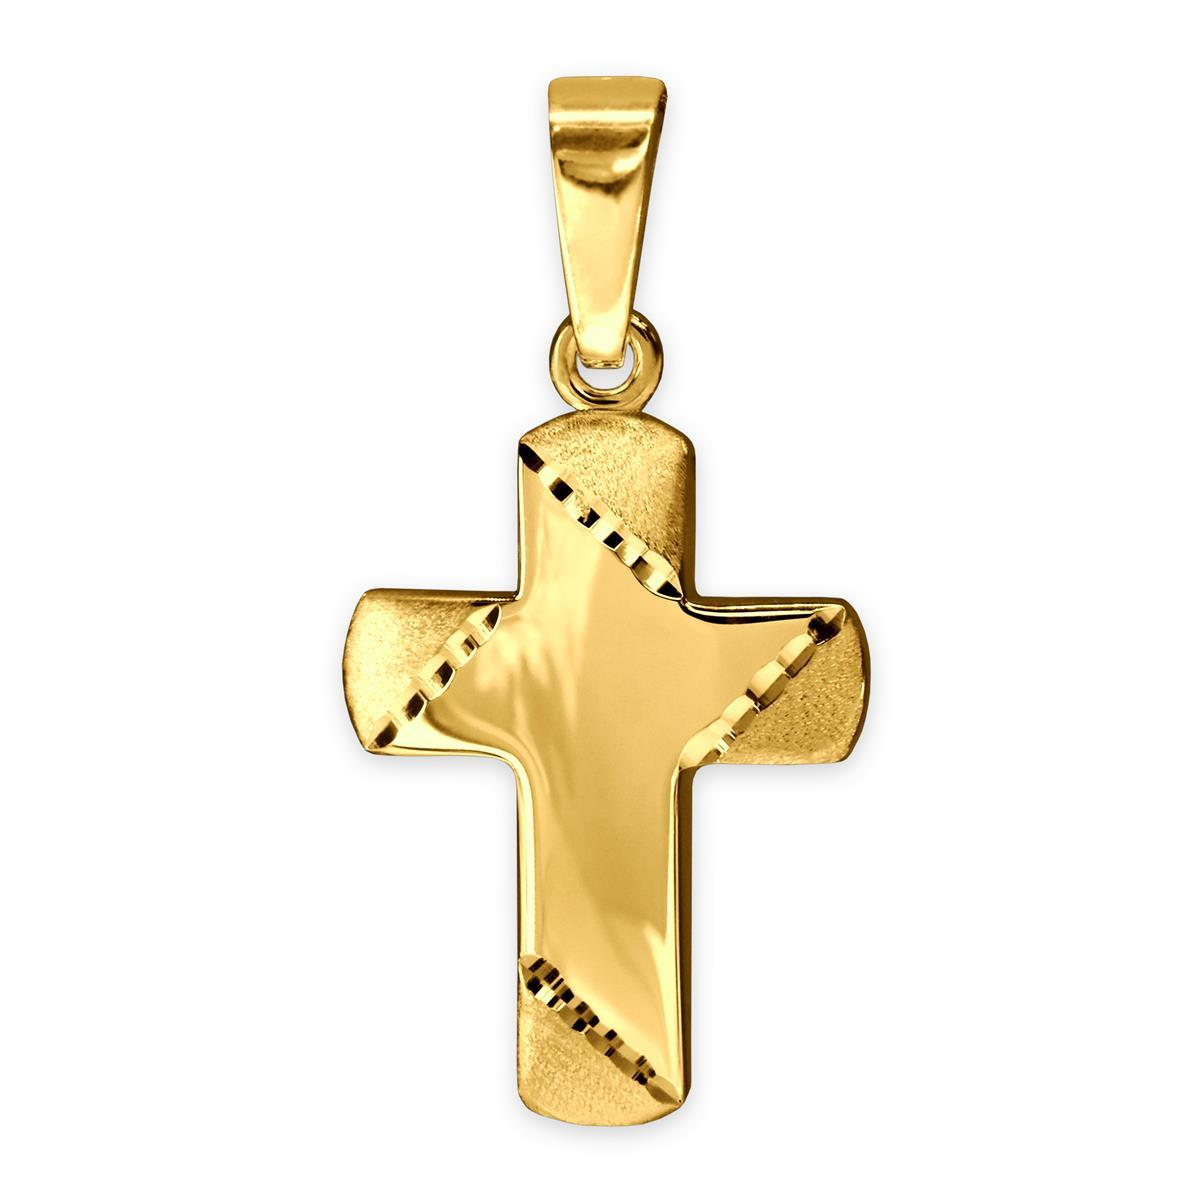 Goldener Anhänger Mini Kreuz 11 x 8 mm Balkenenden matt diamantiert, innen glänzend 333 GOLD 8 KARAT